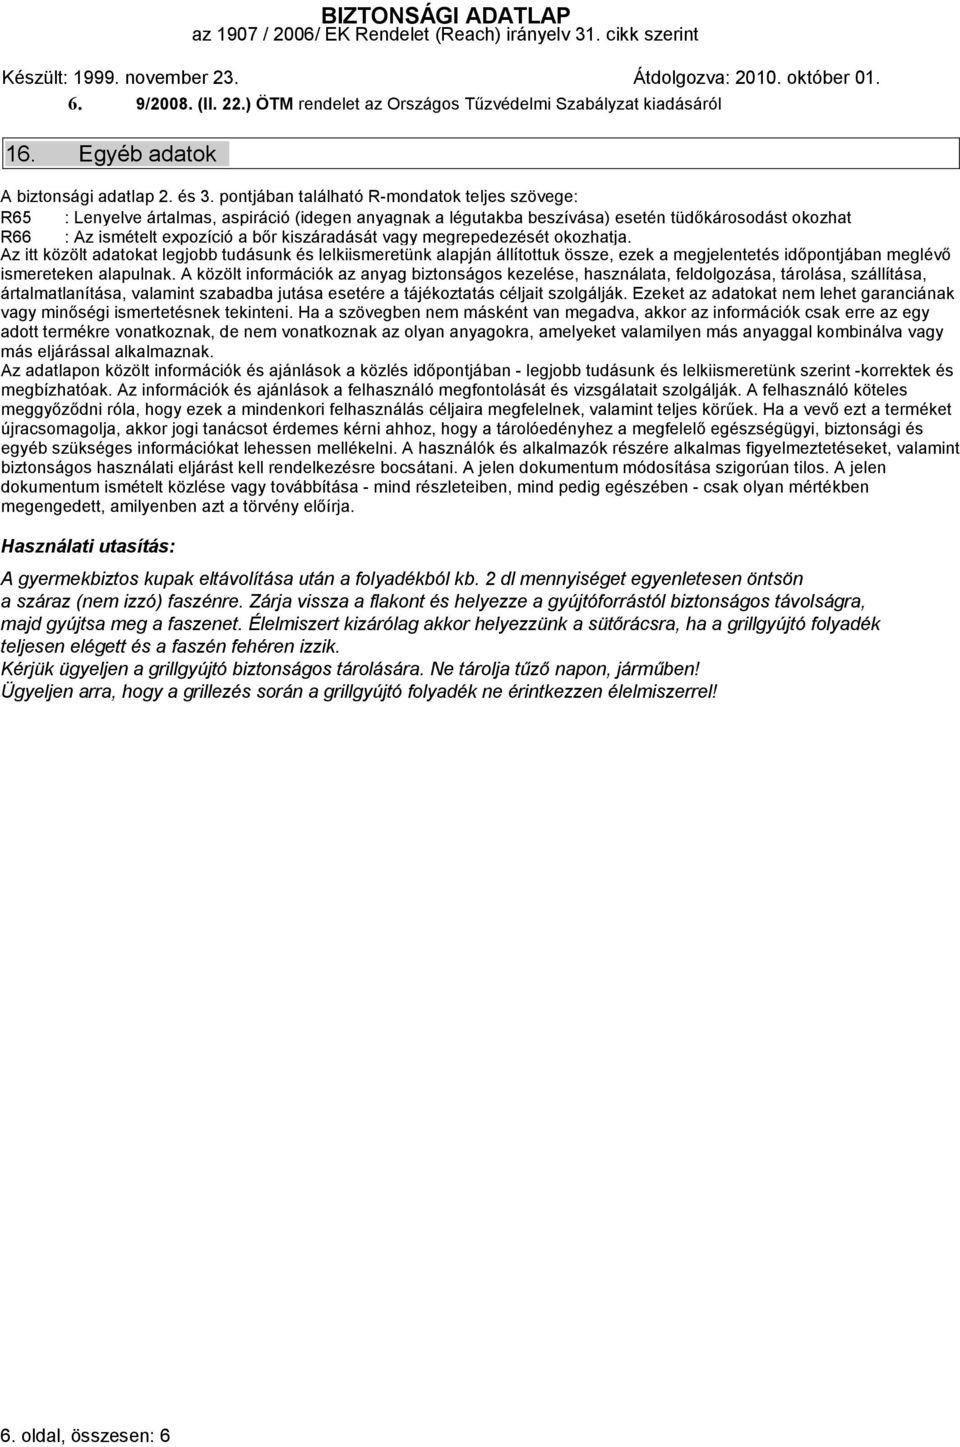 GYÚJTÓFOLYADÉK 1. Anyag / készítmény és cég azonosítása 1.1. Kereskedelmi  megnevezés: Grillgyújtó folyadék - PDF Ingyenes letöltés